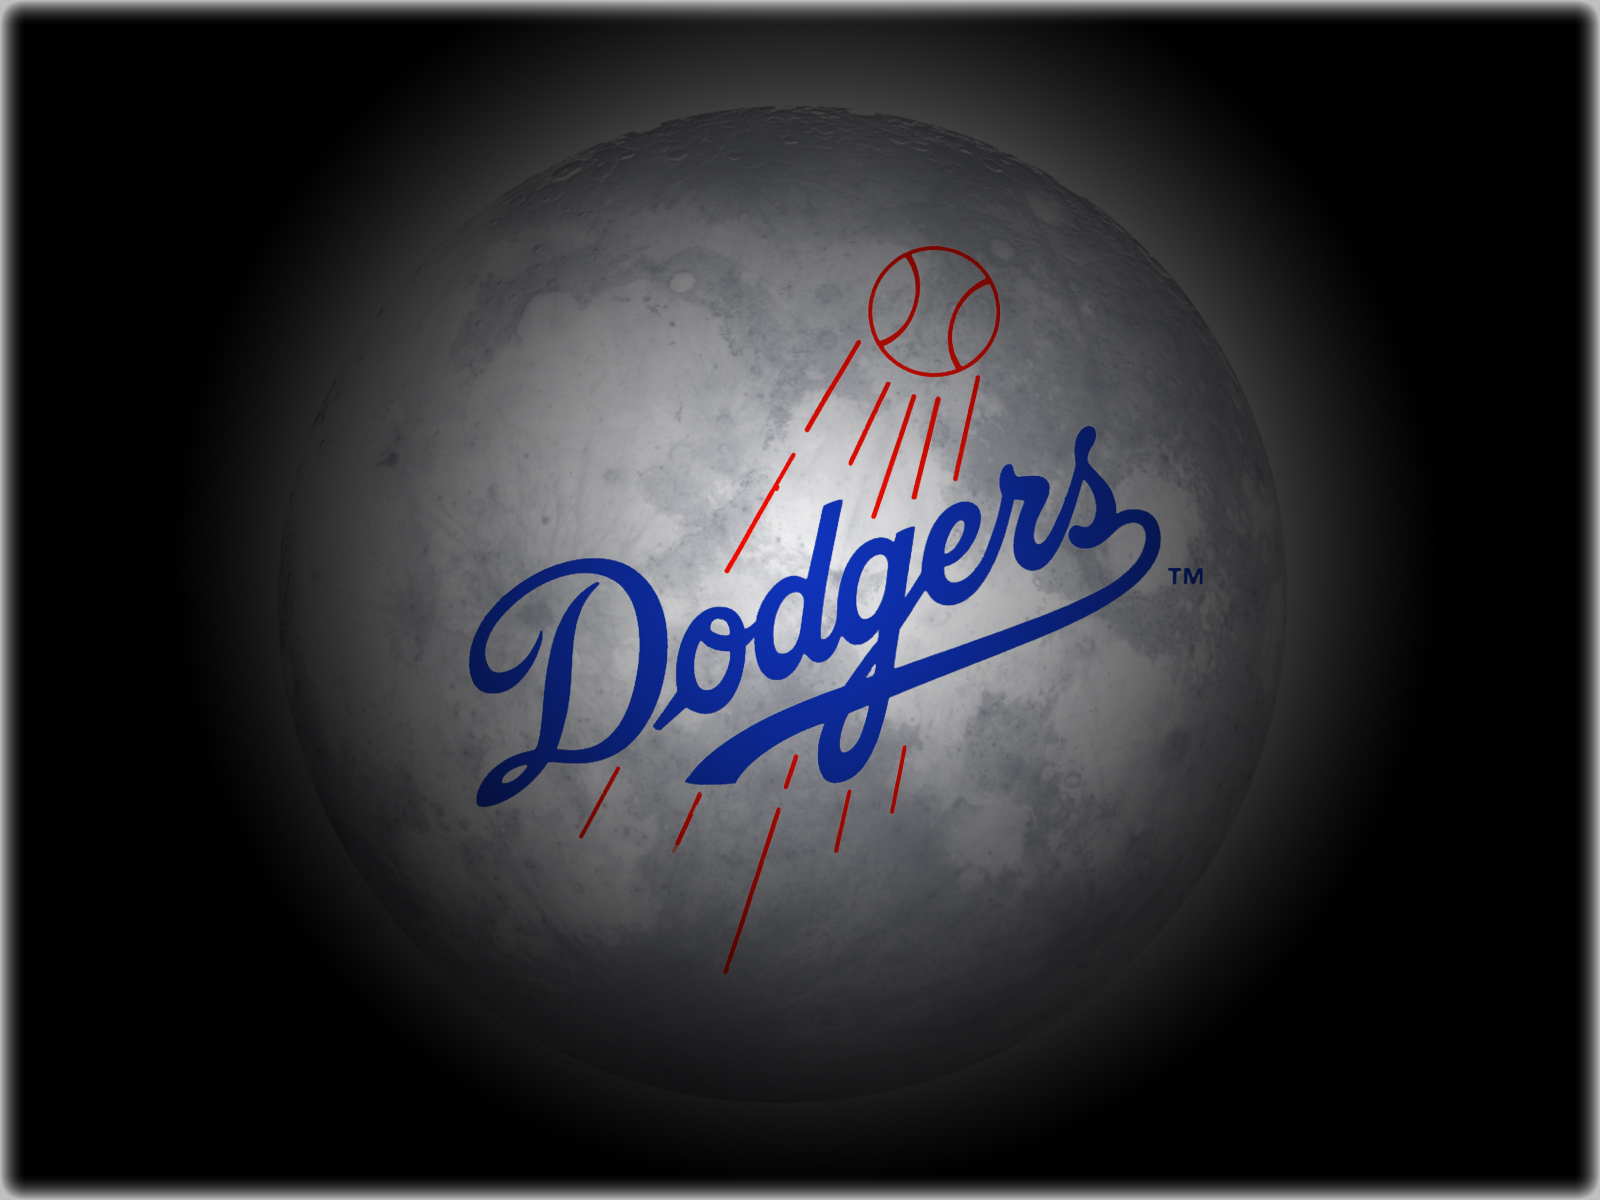 Los Angeles Dodgers Wallpaper 2013 - HD Wallpaper 